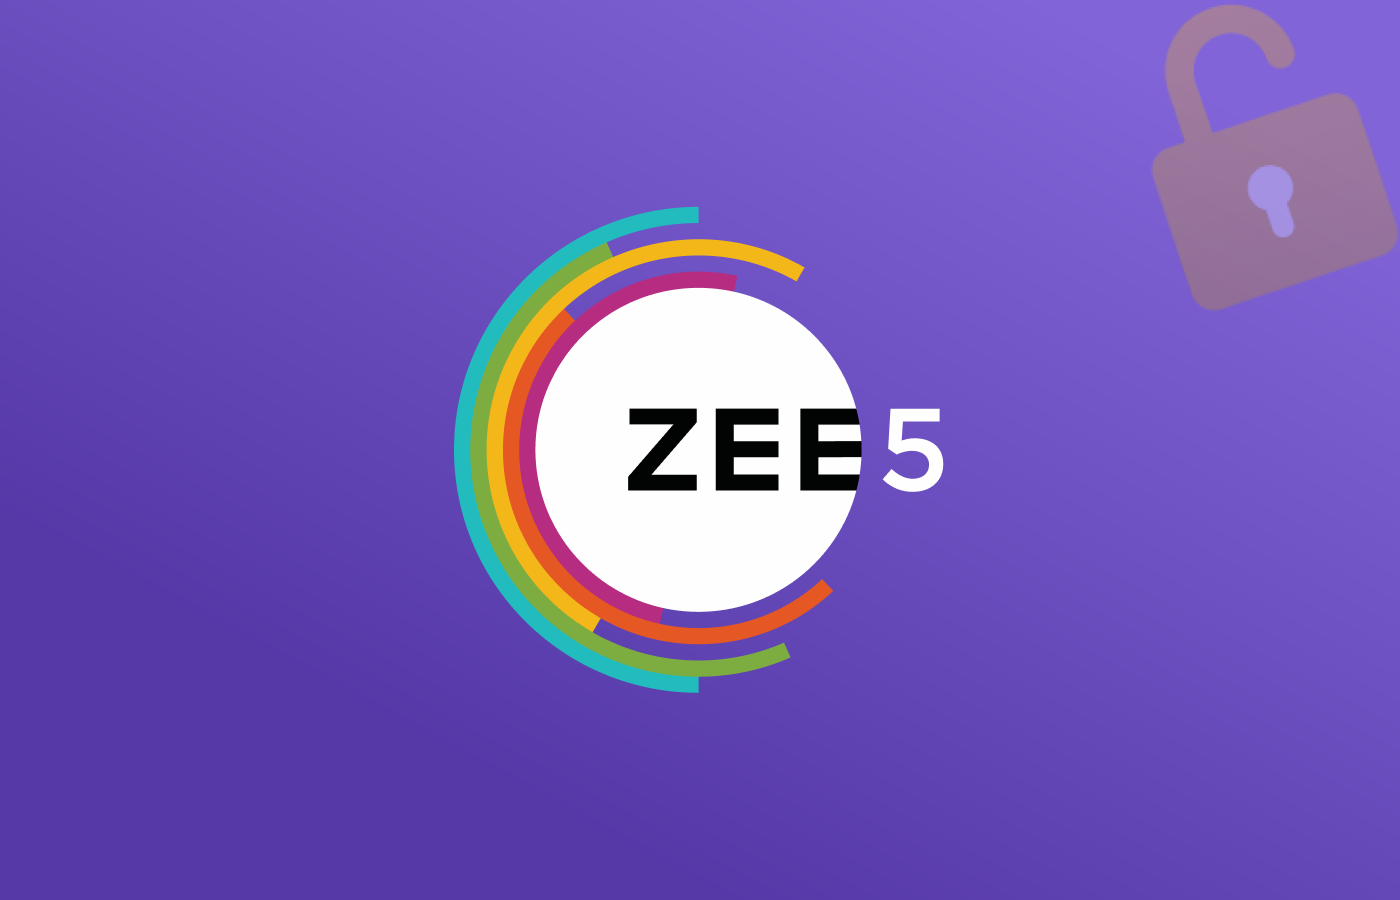 Watch Zee5 Outside India